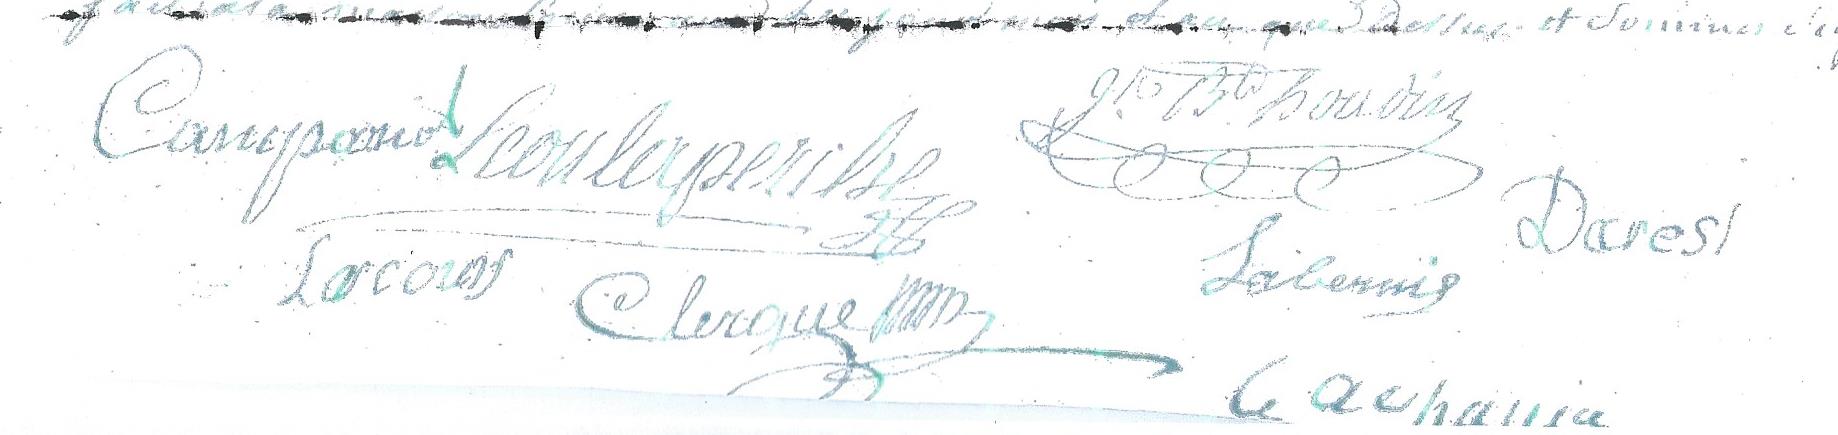 Signature labouysse